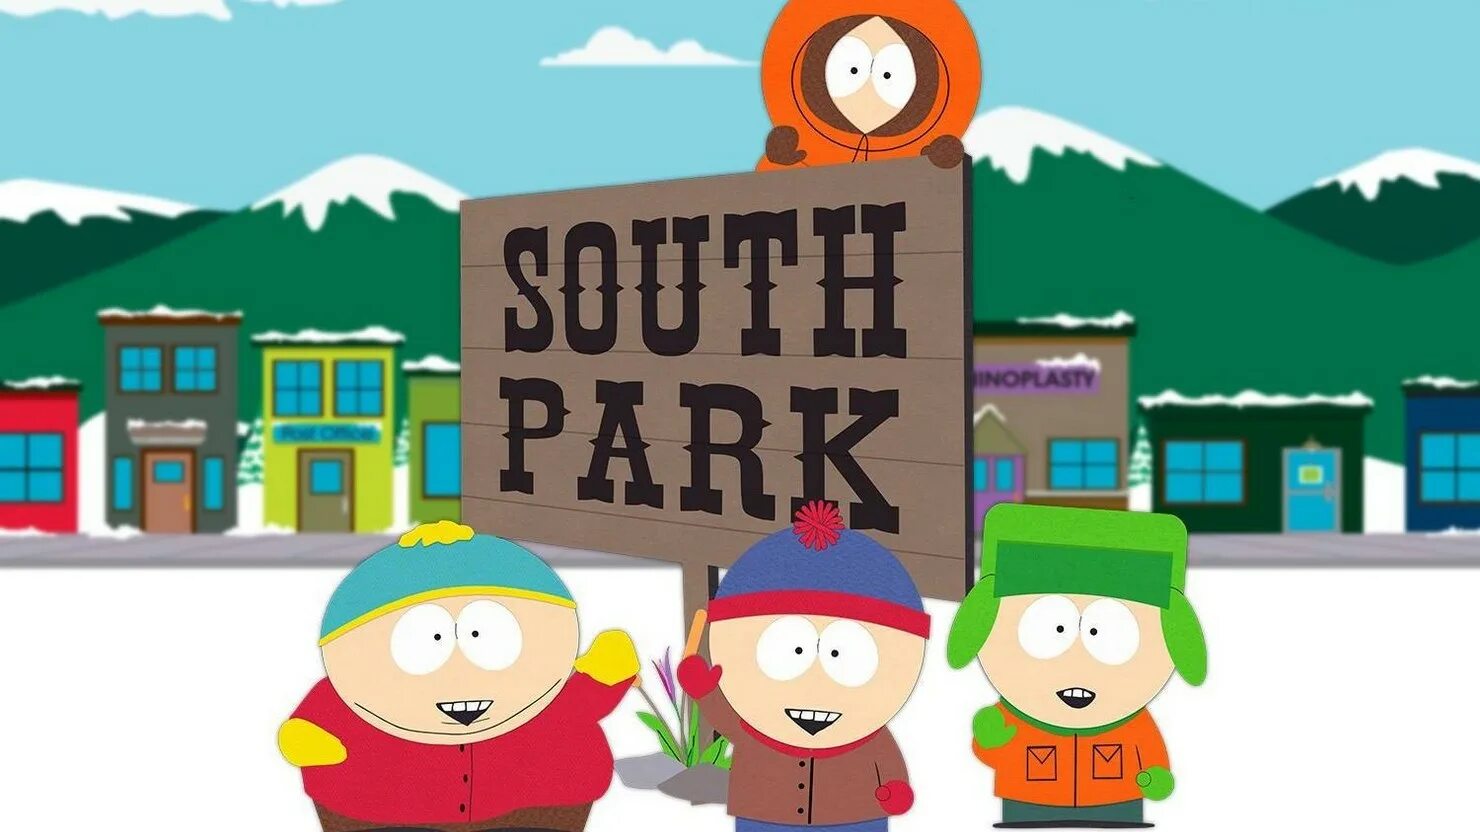 South park snow day обзор. Томми Южный парк. Южный парк картинки. Южный парк Парамаунт. Южный парк Snow Day.